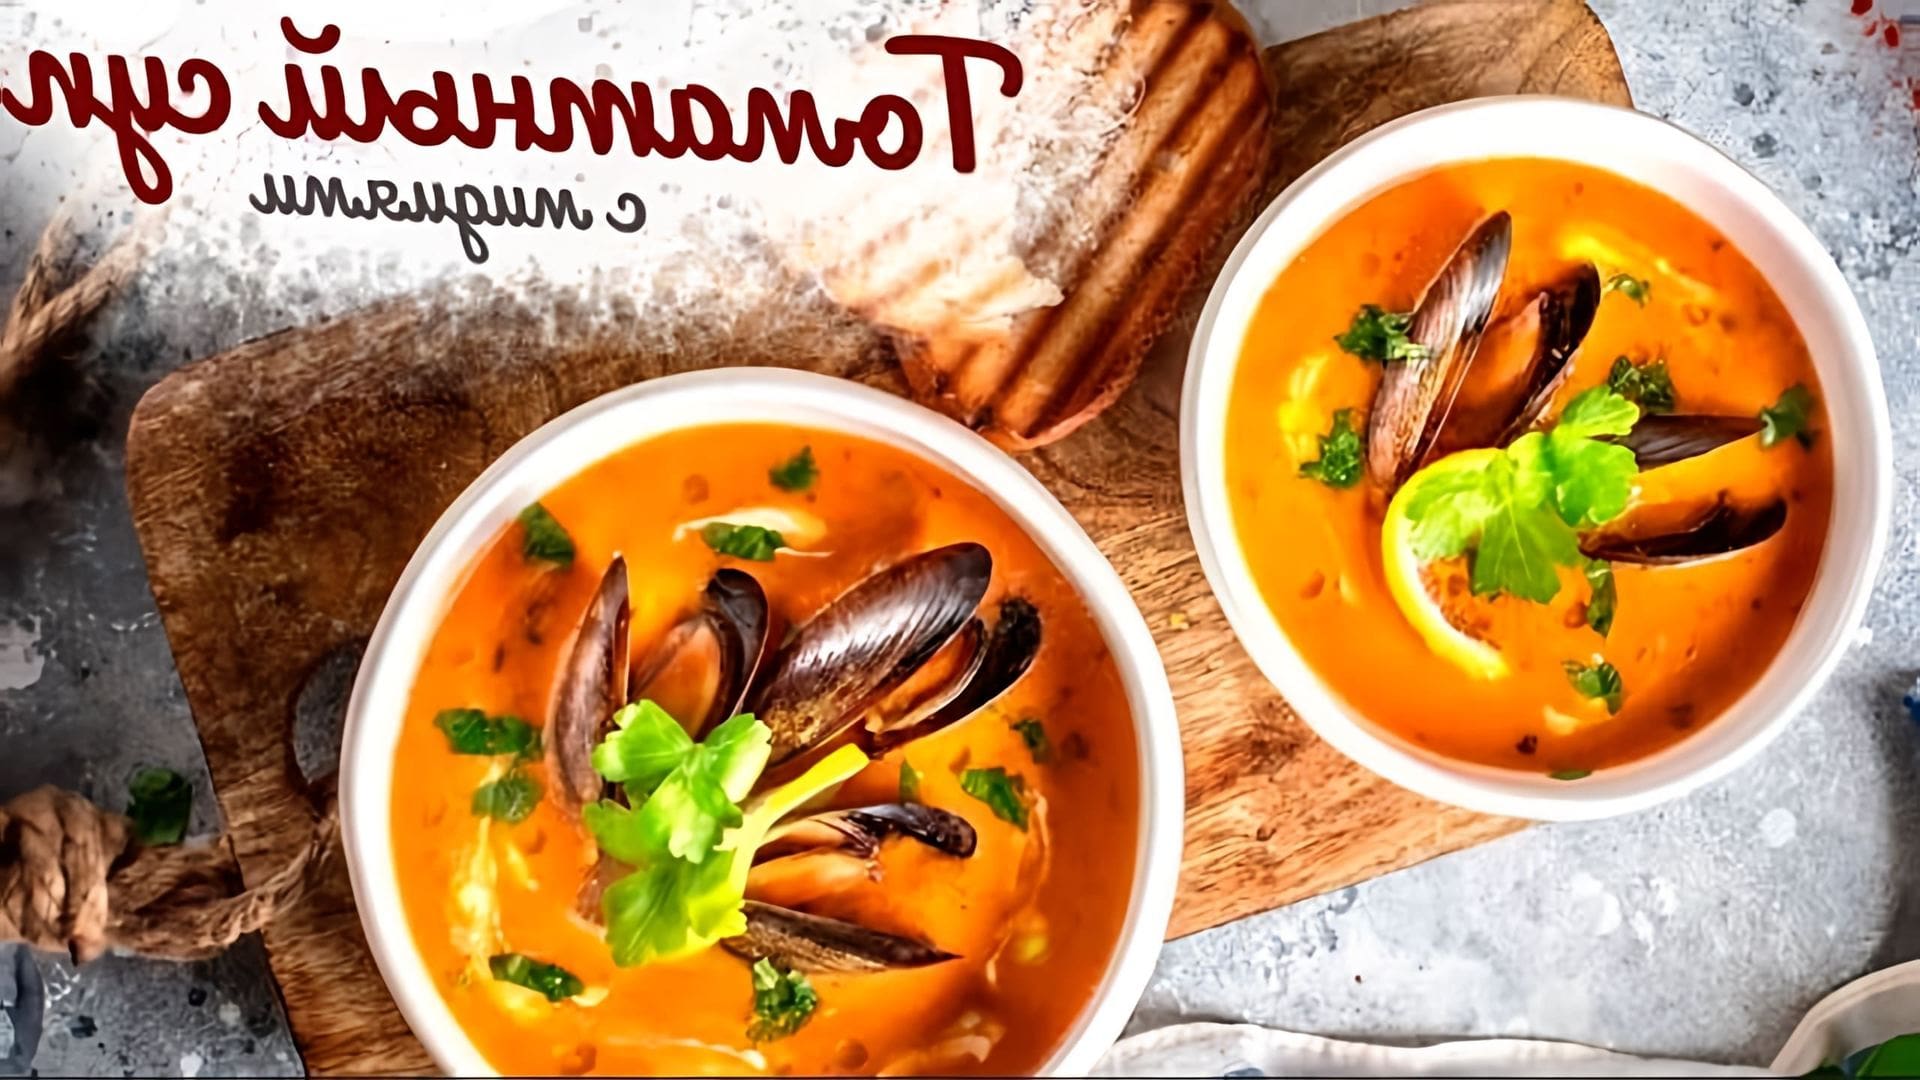 В этом видео демонстрируется процесс приготовления томатного супа с мидиями